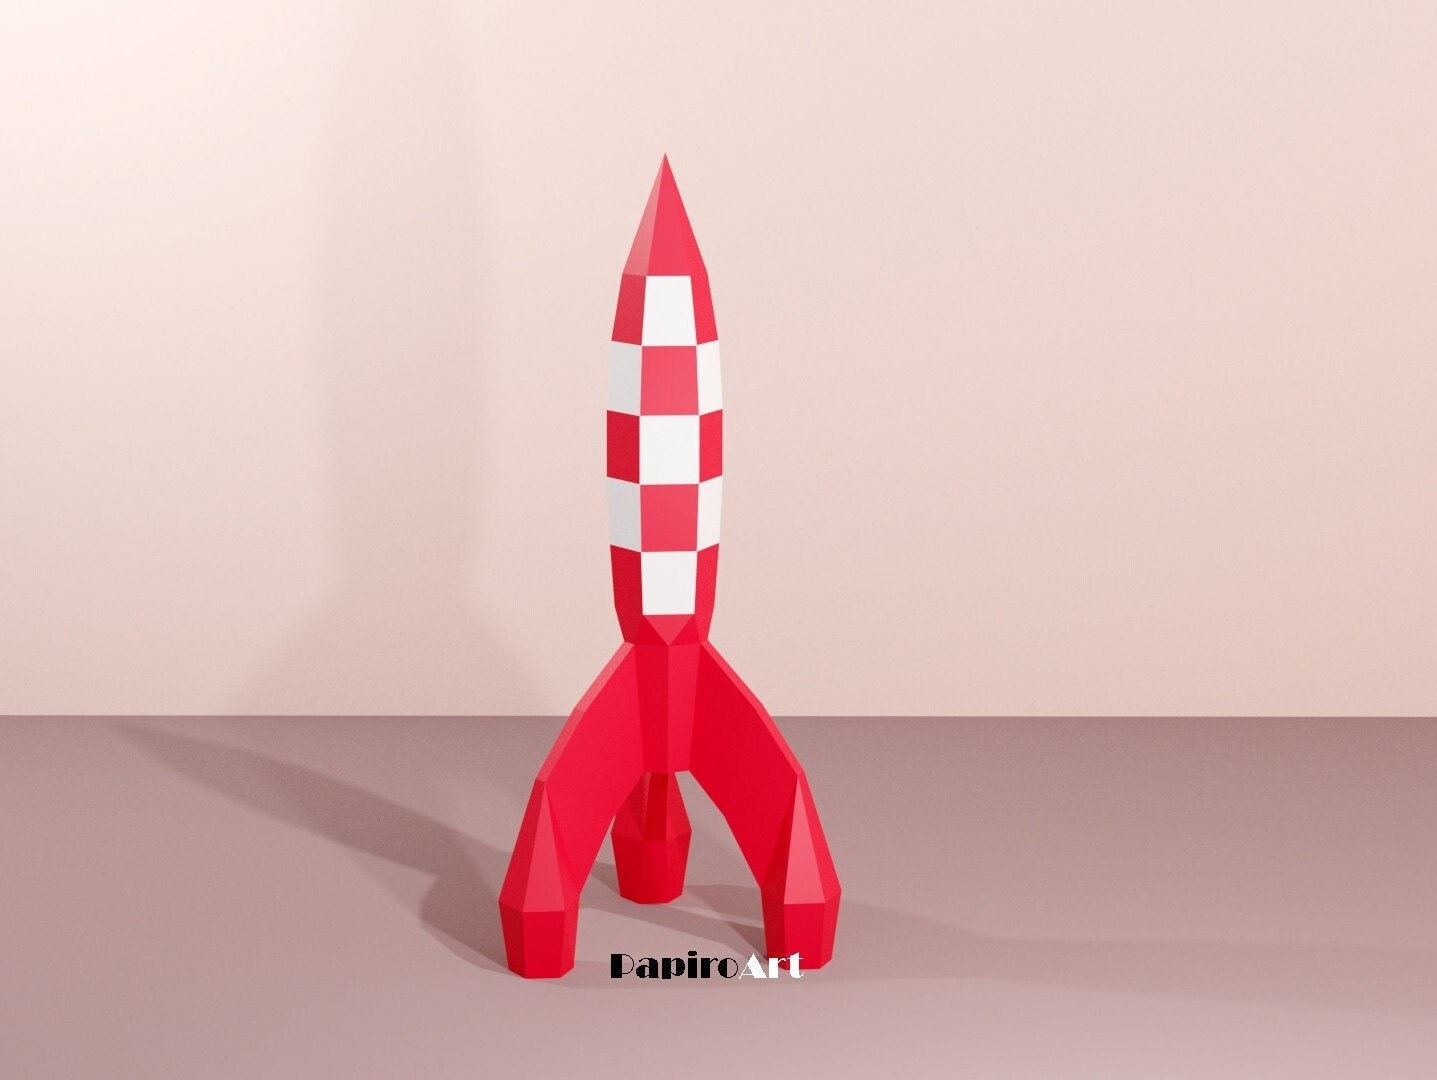 Impression 3D Fusée Tintin (Tintin Rocket) • Fabriqué avec une